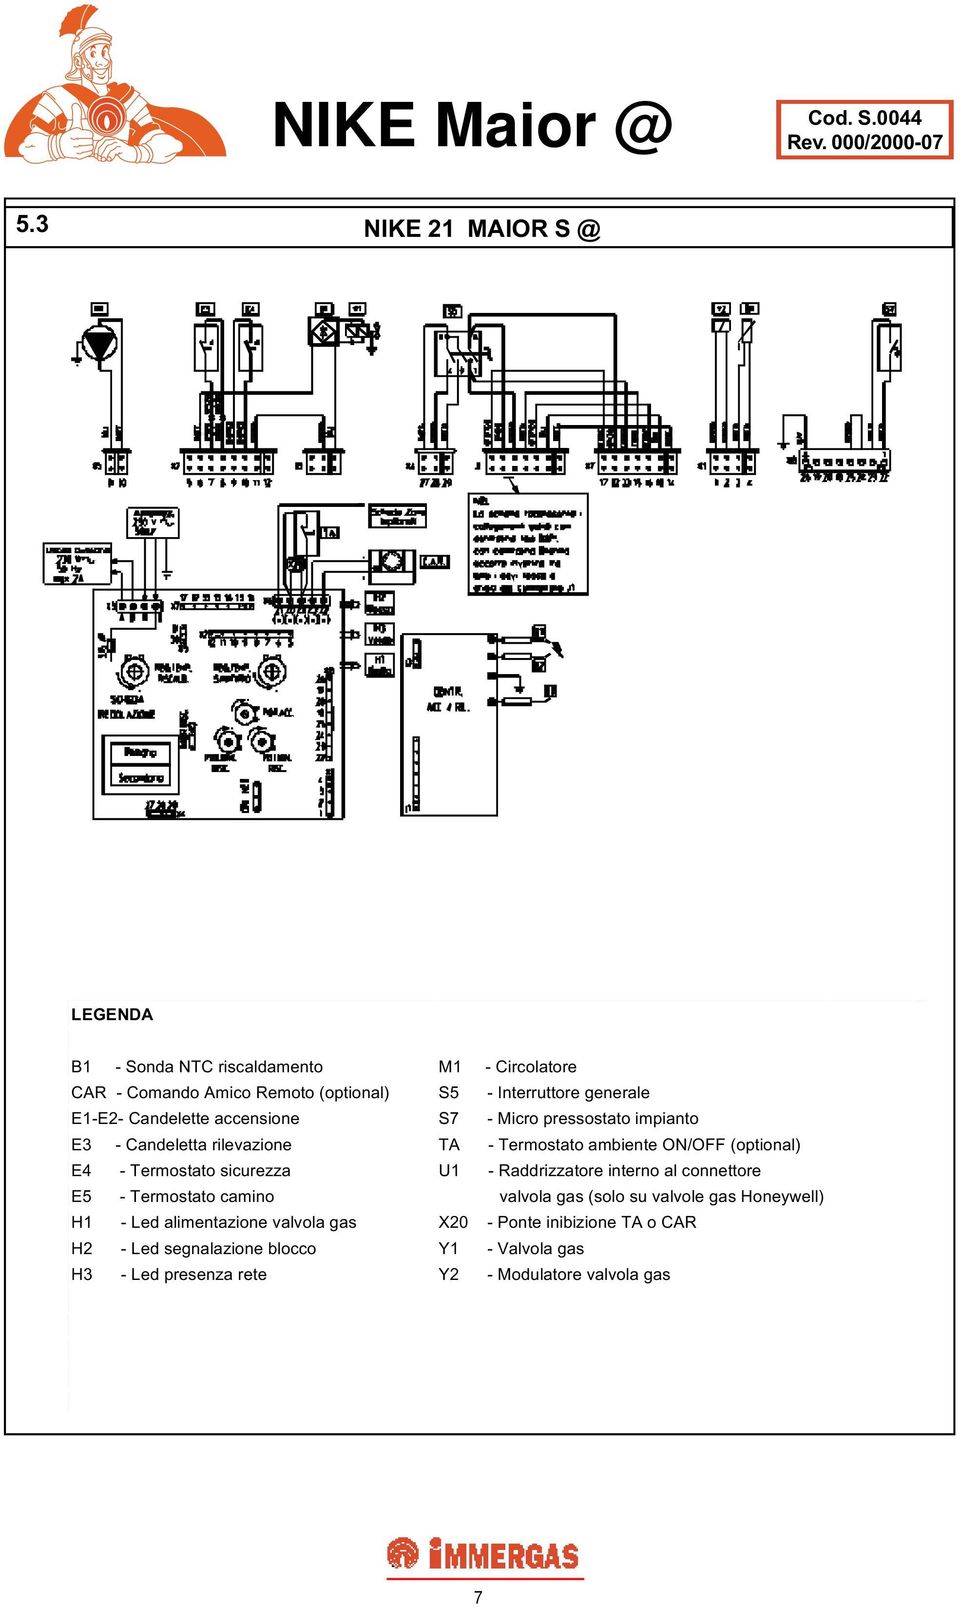 Termostato sicurezza U1 - Raddrizzatore interno al connettore E5 - Termostato camino valvola gas (solo su valvole gas Honeywell) H1 - Led